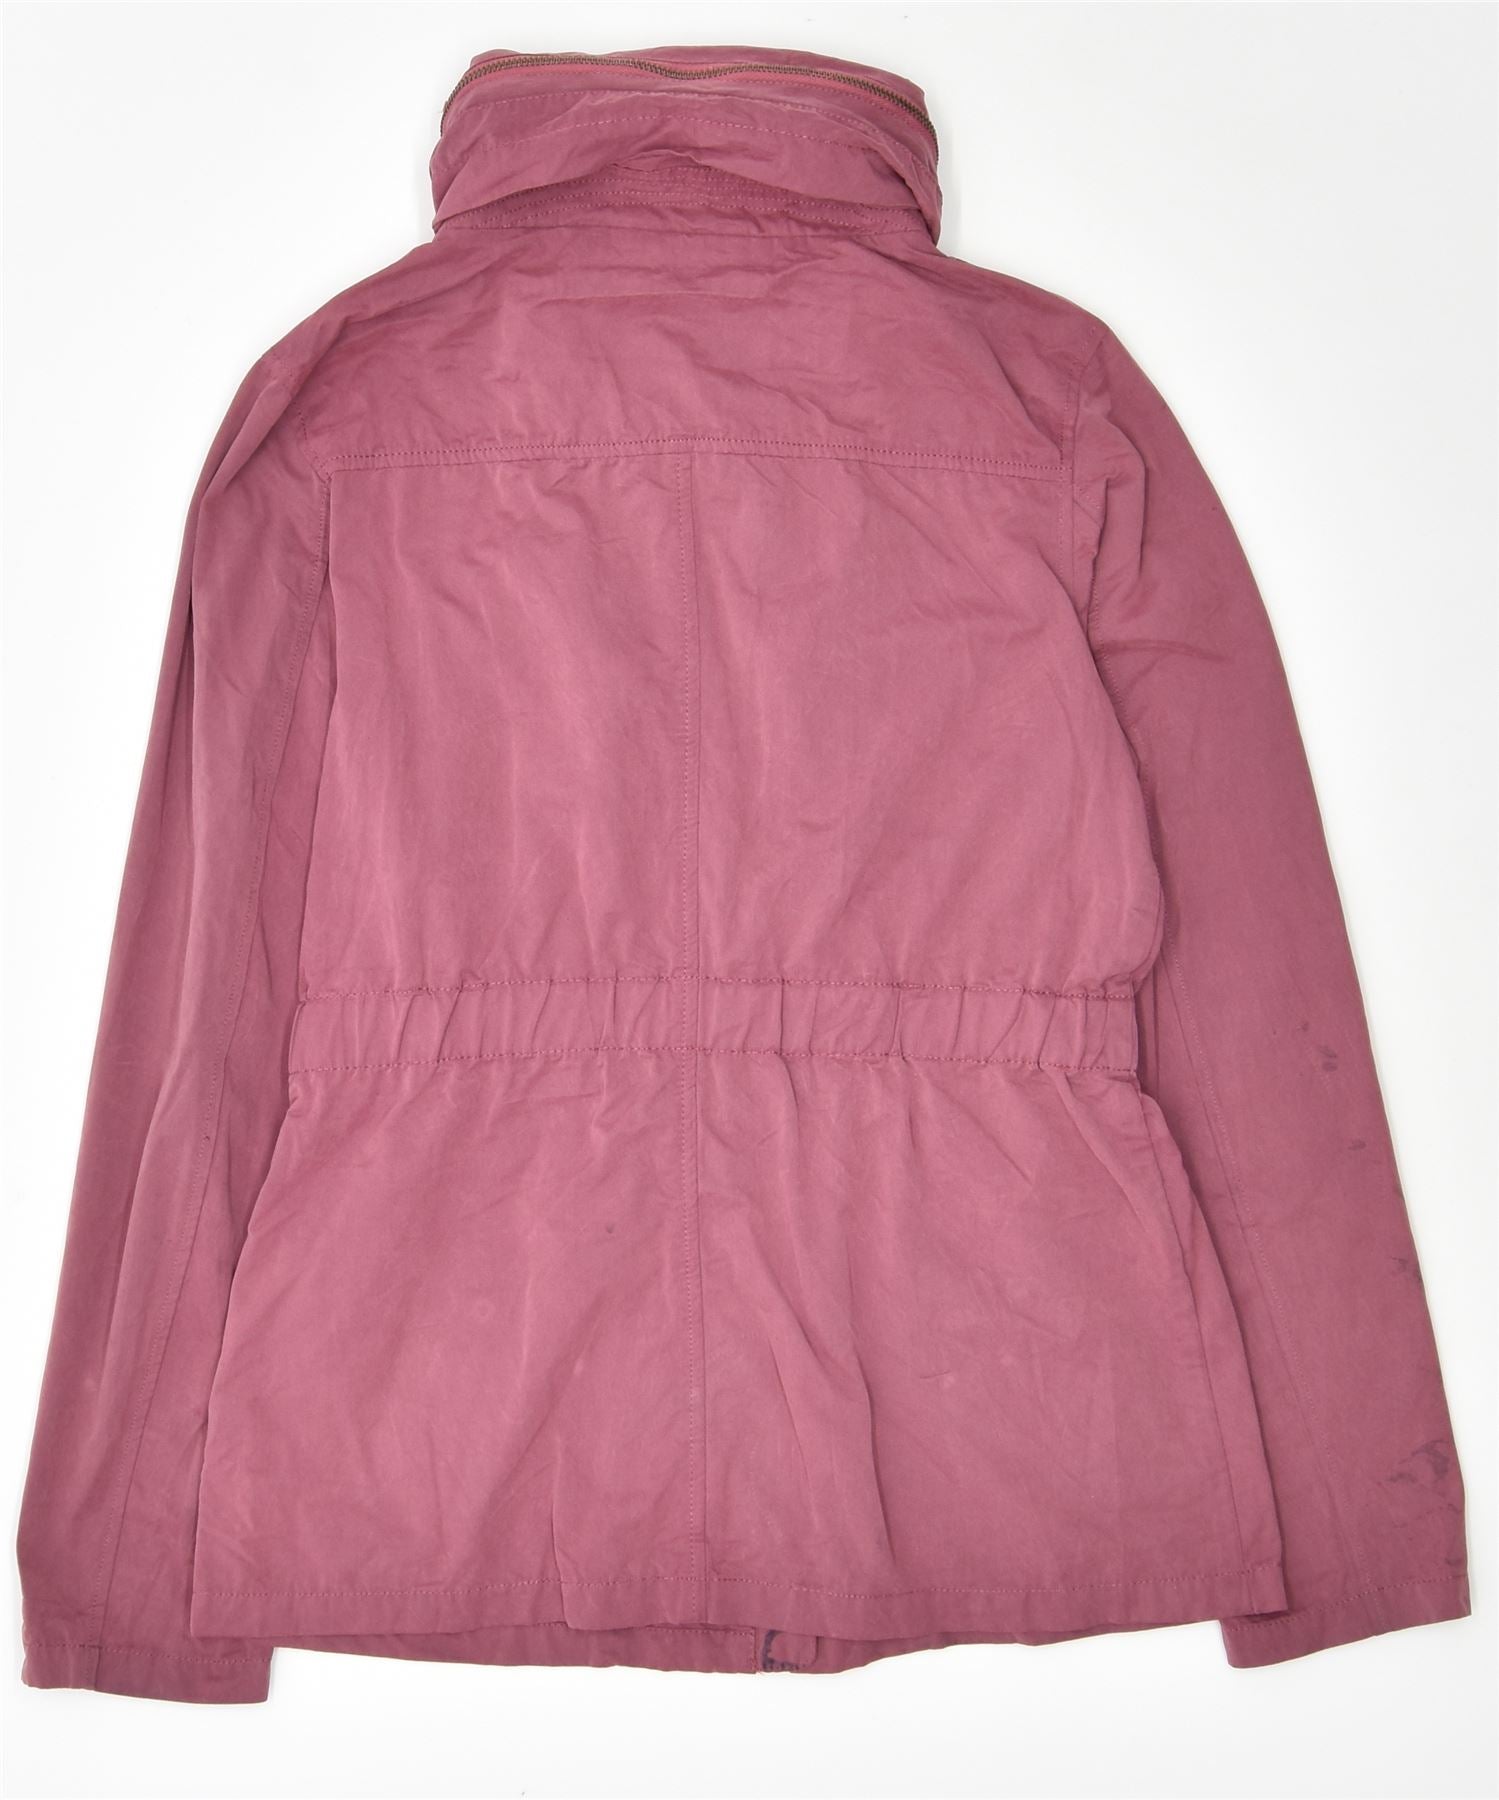 PINK Windbreaker Jacket for Women Small 